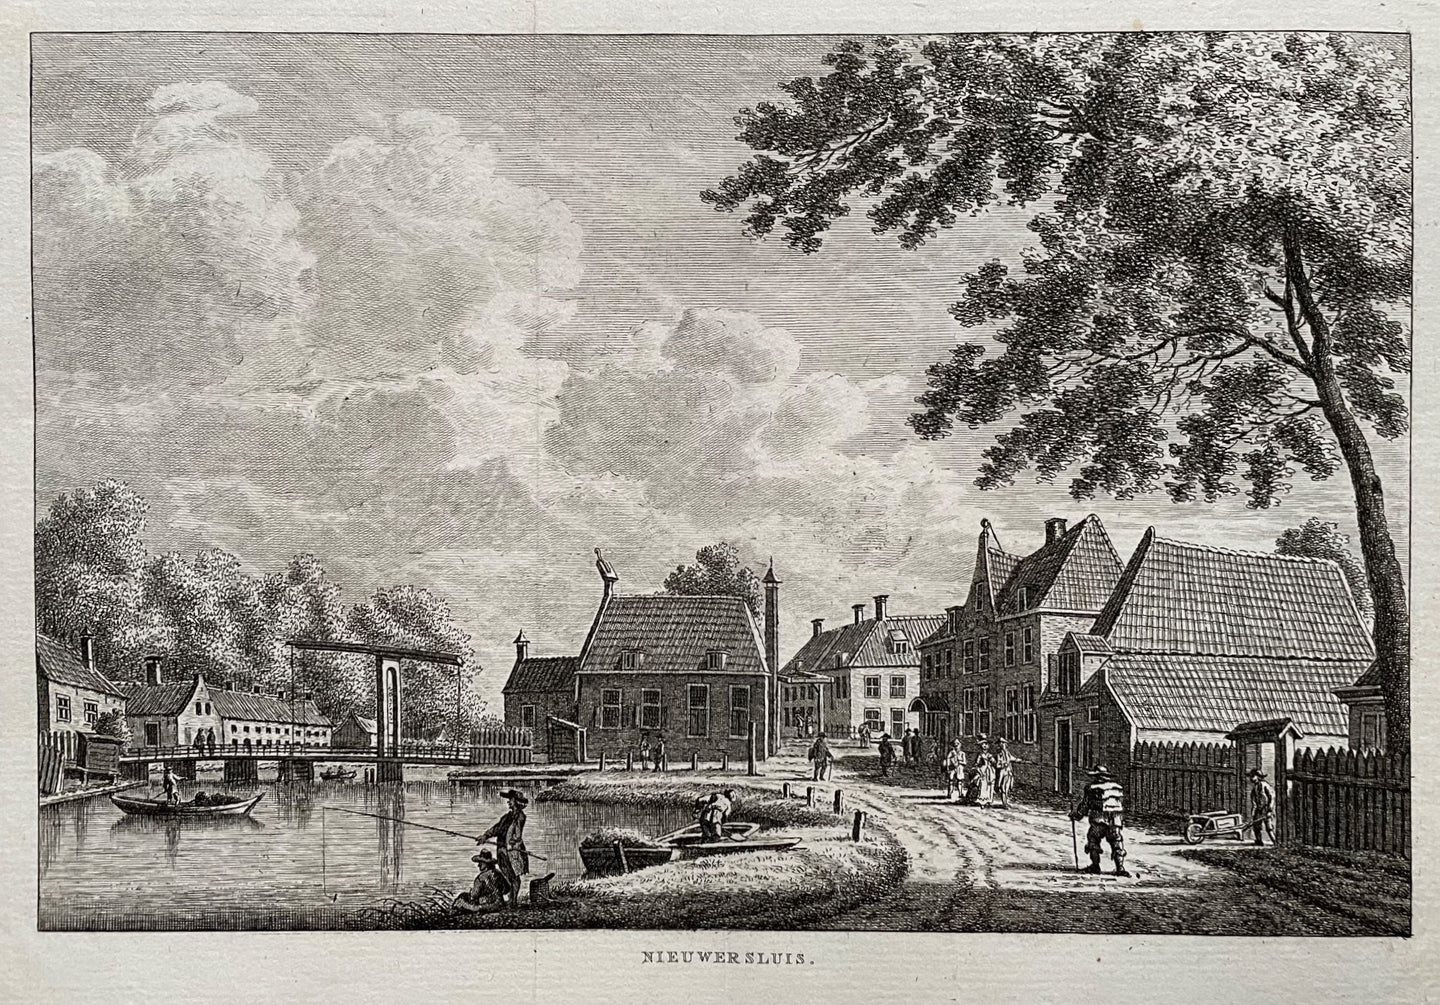 Nieuwersluis - KF Bendorp - 1793